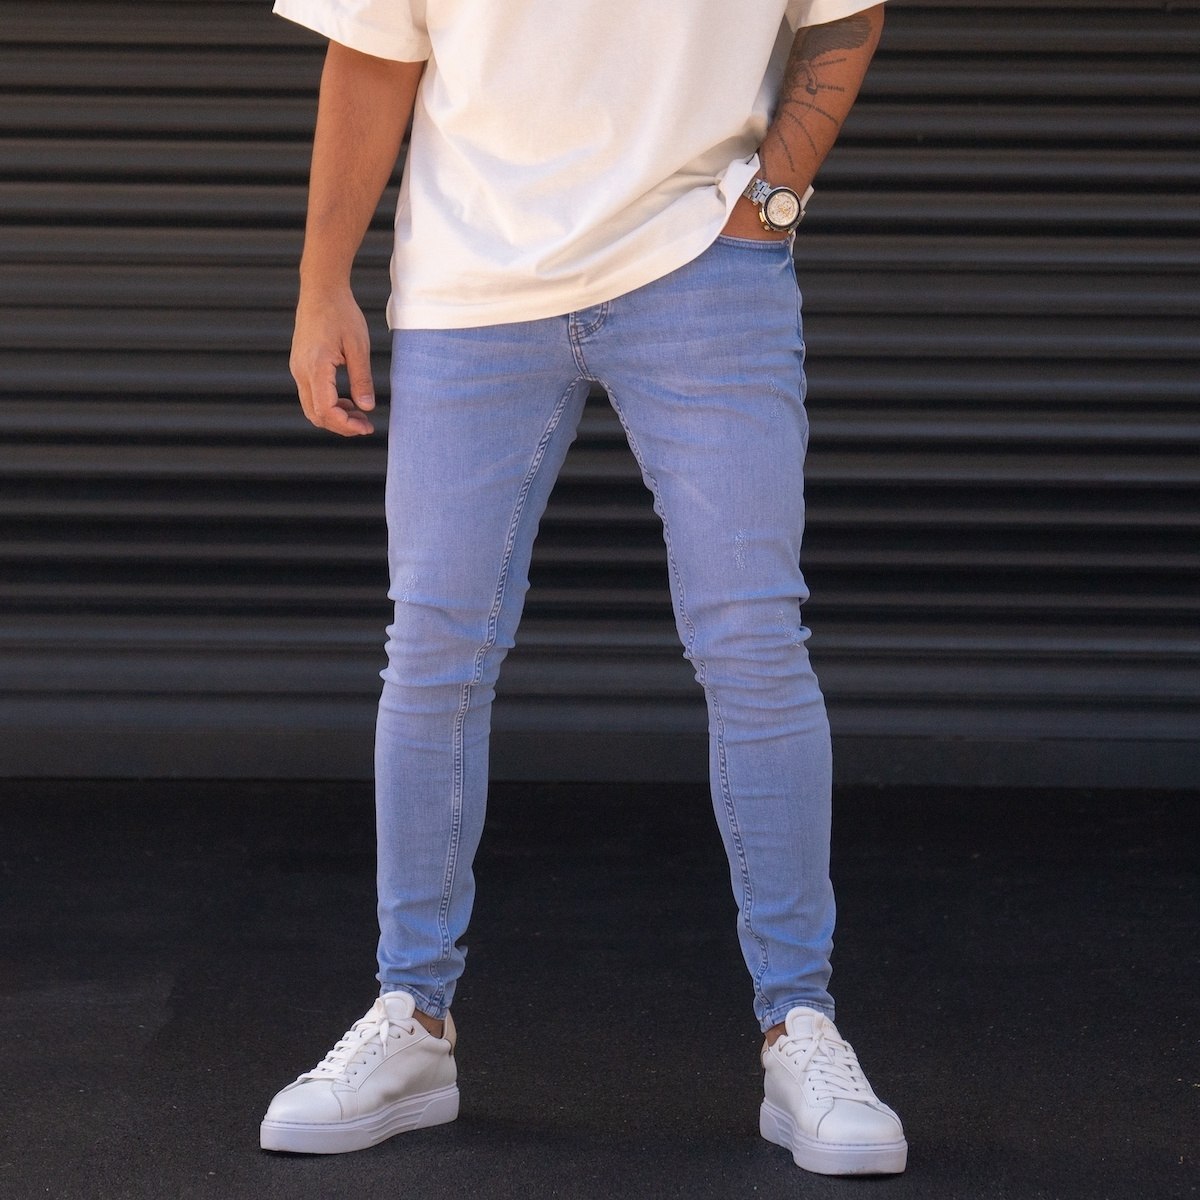 Мужские облегающие джинсы из лайкры ледяного цвета в винтажном стиле